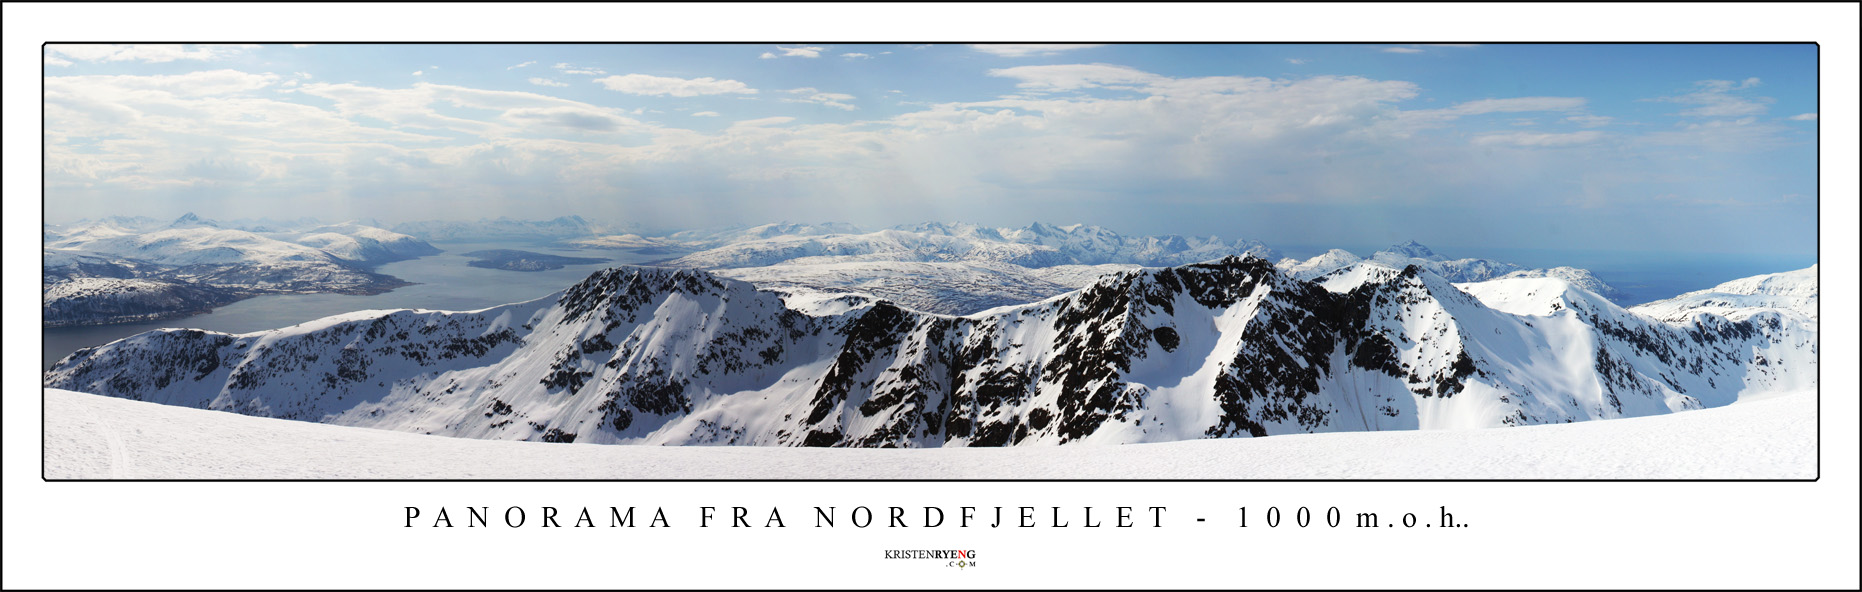 PanoramaFraNordfjellet2.jpg - Utsikt mot sør fra Nordfjellet (1000 moh) på Ringvassøy. Vi ser fastlandet ute til venstre, Tromsøya med Tromsøysundet og Sandnessundet, samt Kvaløya. Fjellkjeden nærmest viser Skulgamtindene.